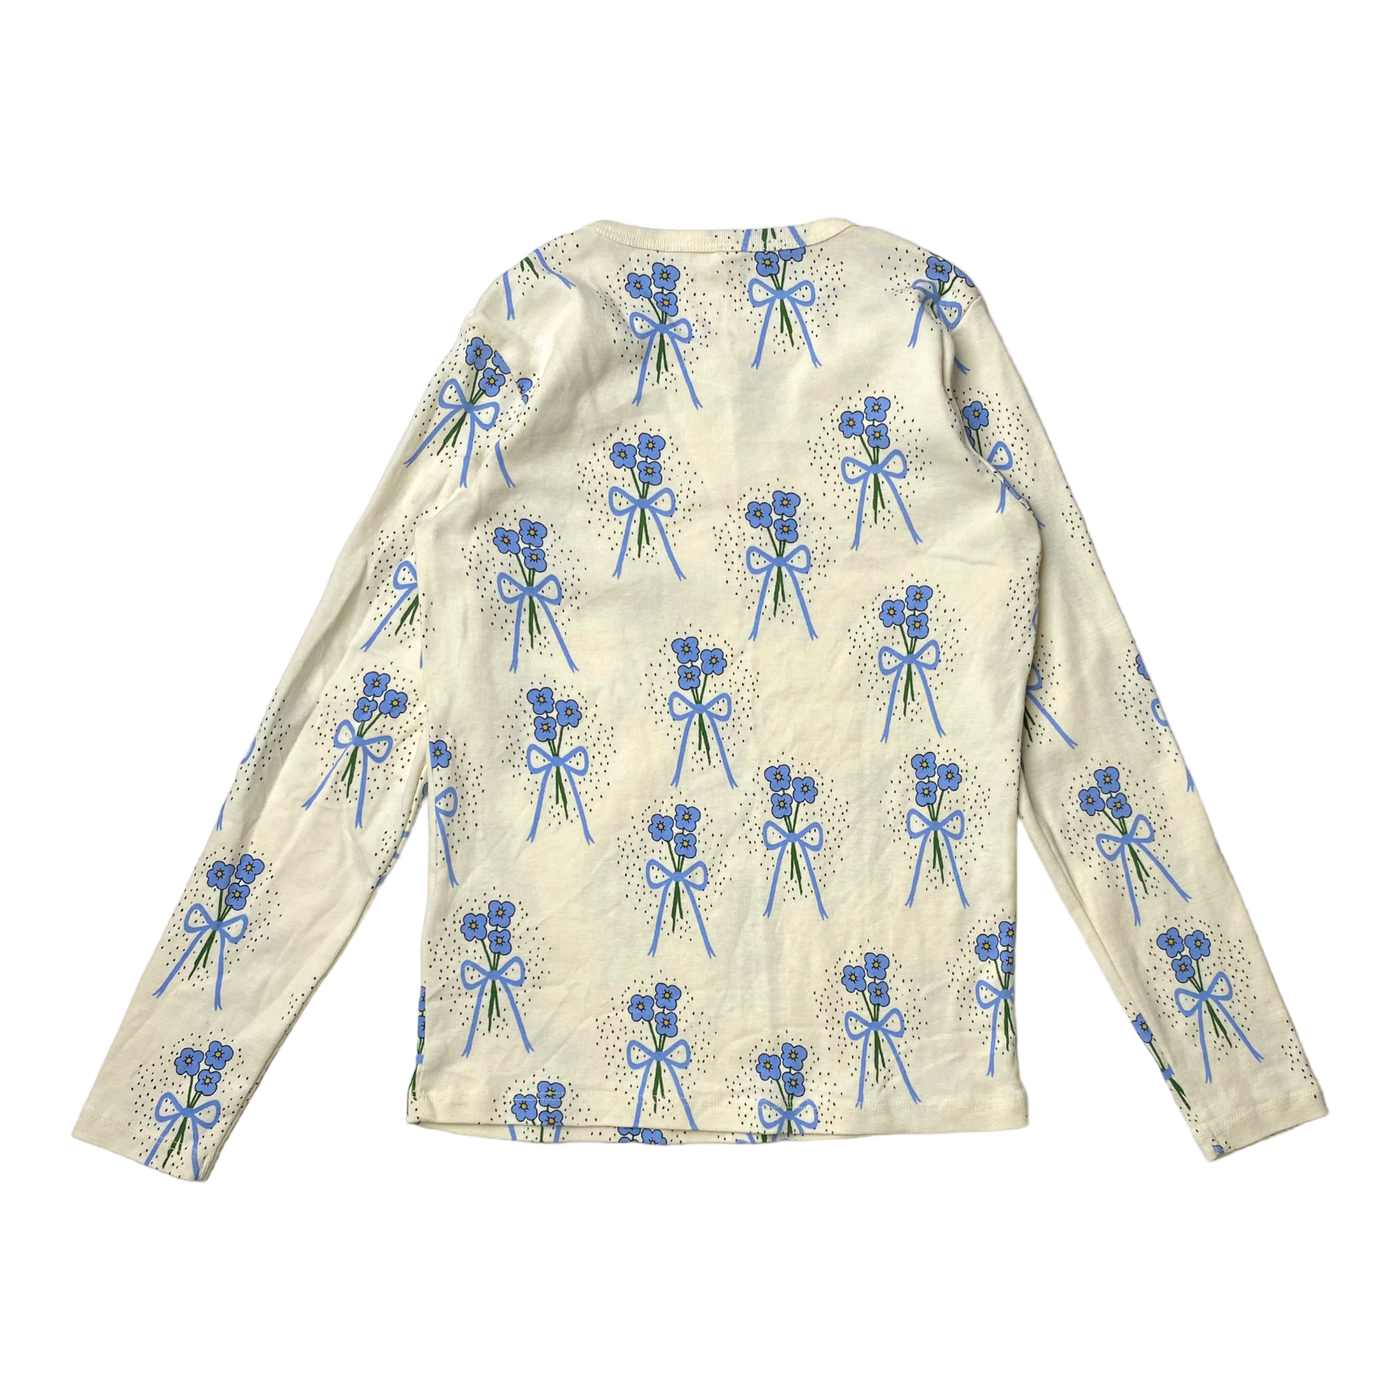 Mini Rodini shirt, flowers | 128/134cm